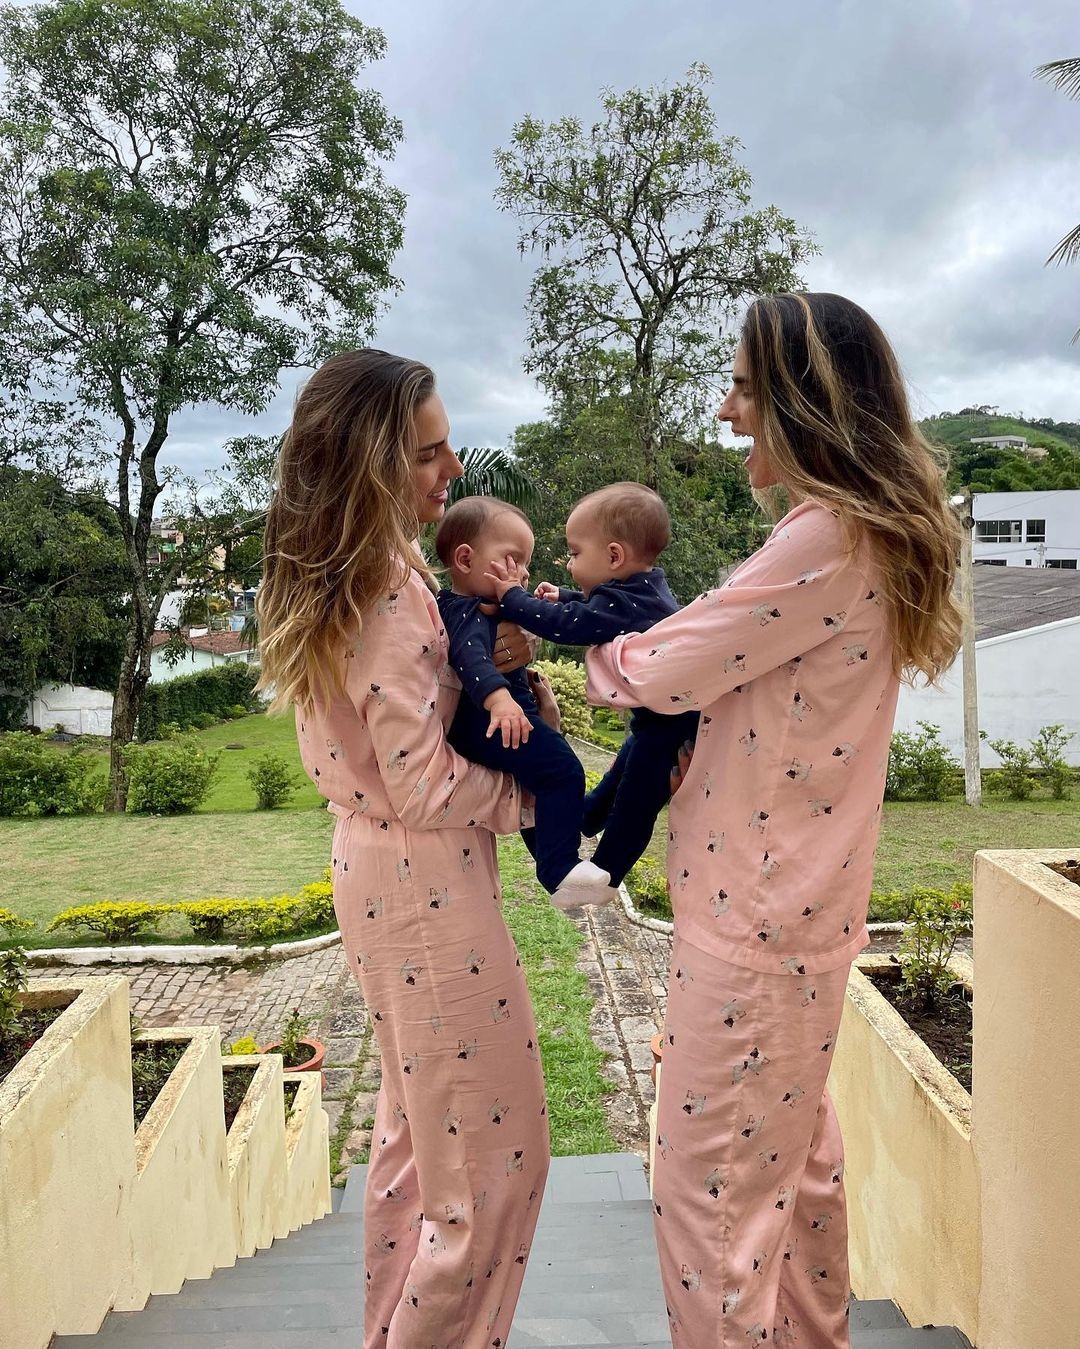 Combinando looks, Marcella Fogaça faz clique com a irmã e as filhas (Foto: Reprodução/Instagram)